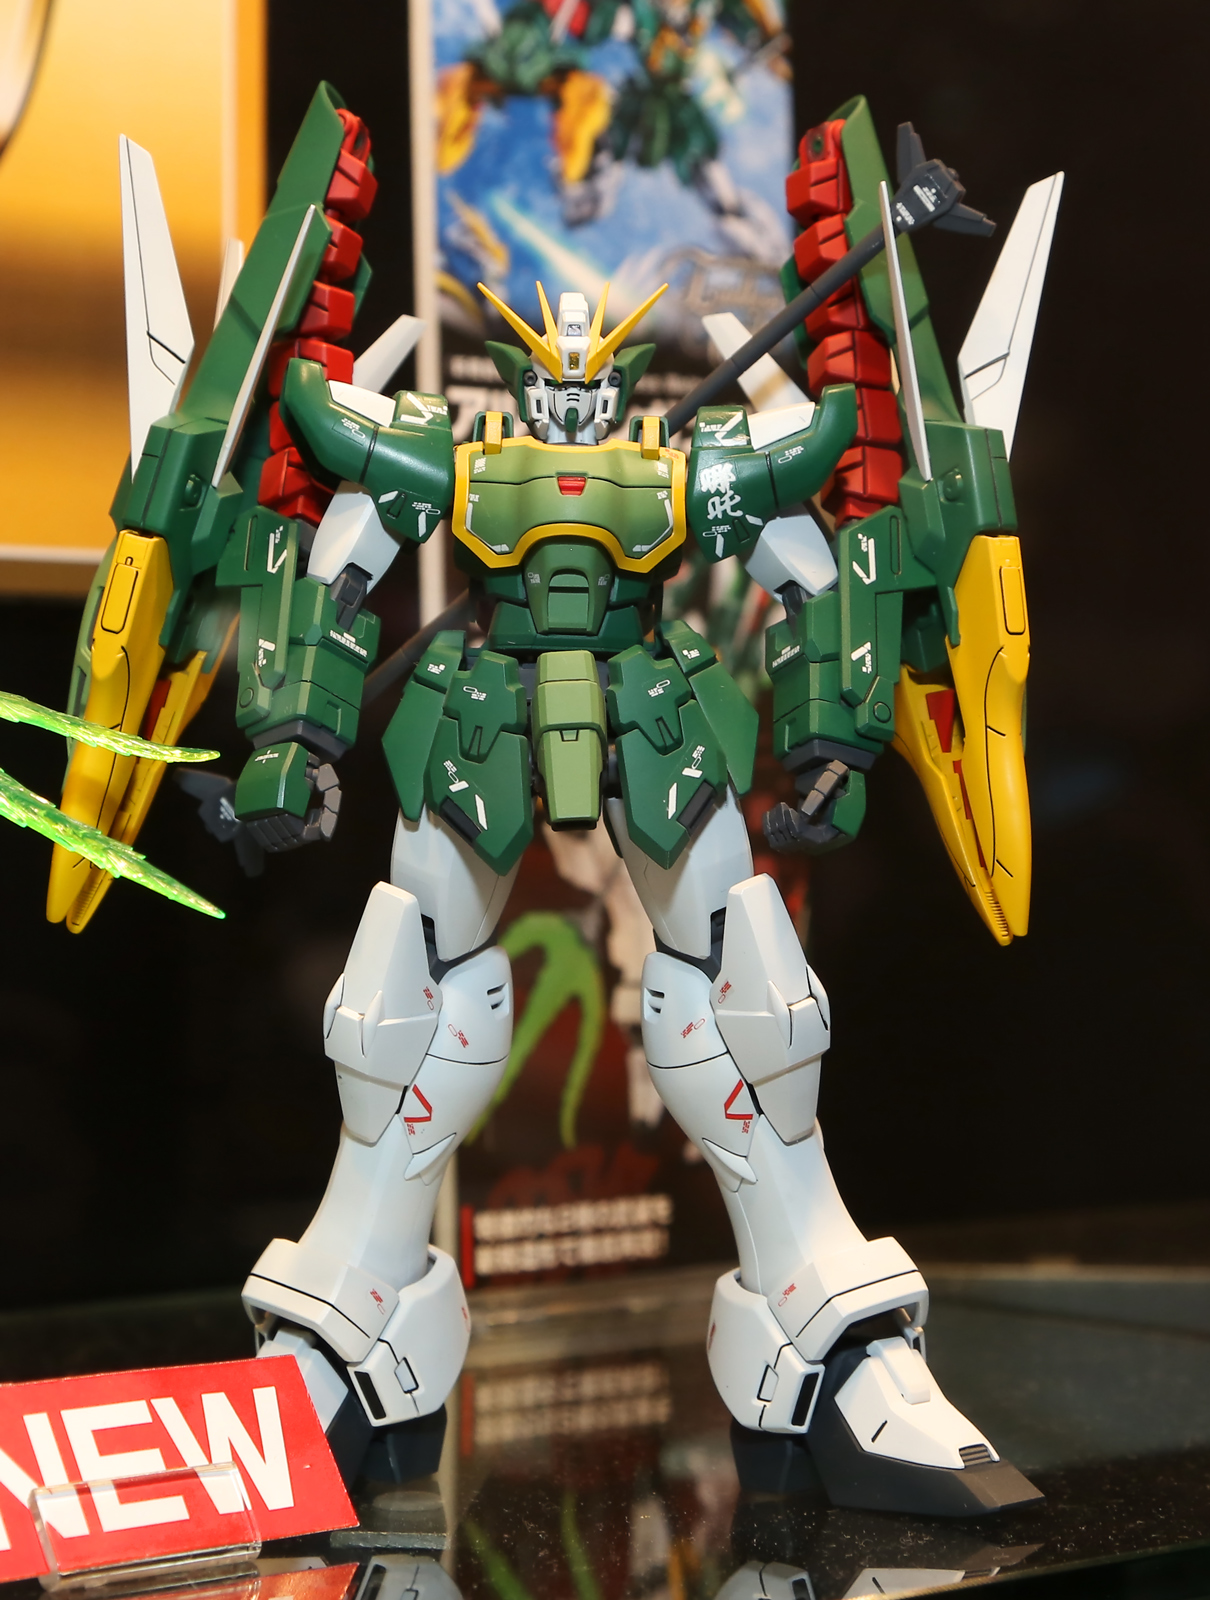 MG 1/100 XXXG-01S2 Altron Gundam EW REISSUE 2nd Run Premium Bandai 